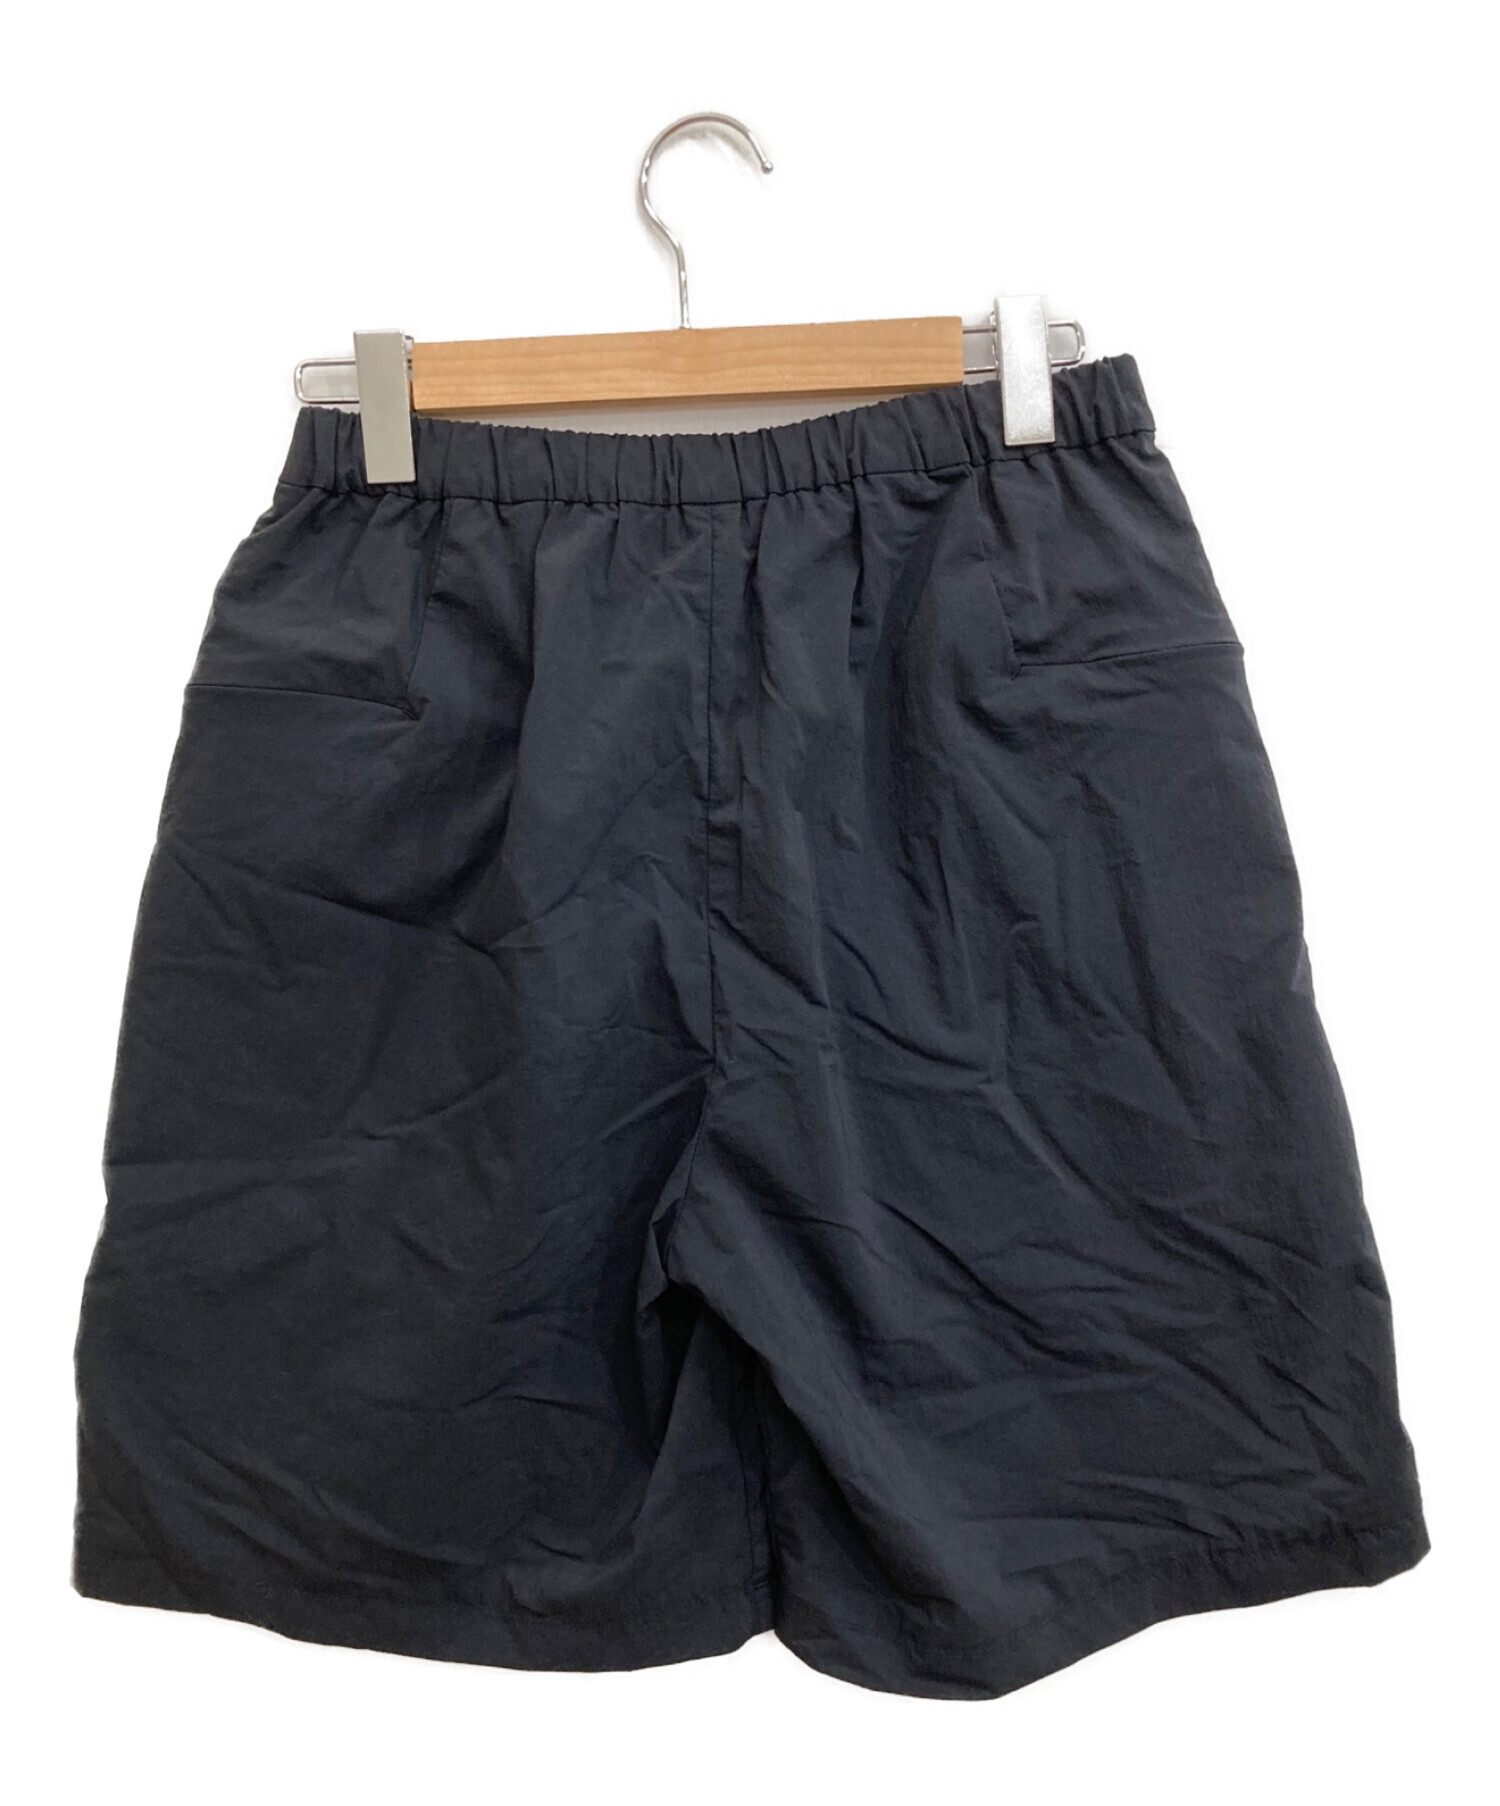 teatora Wallet Shorts RESORT DR ブラック 3 - ショートパンツ